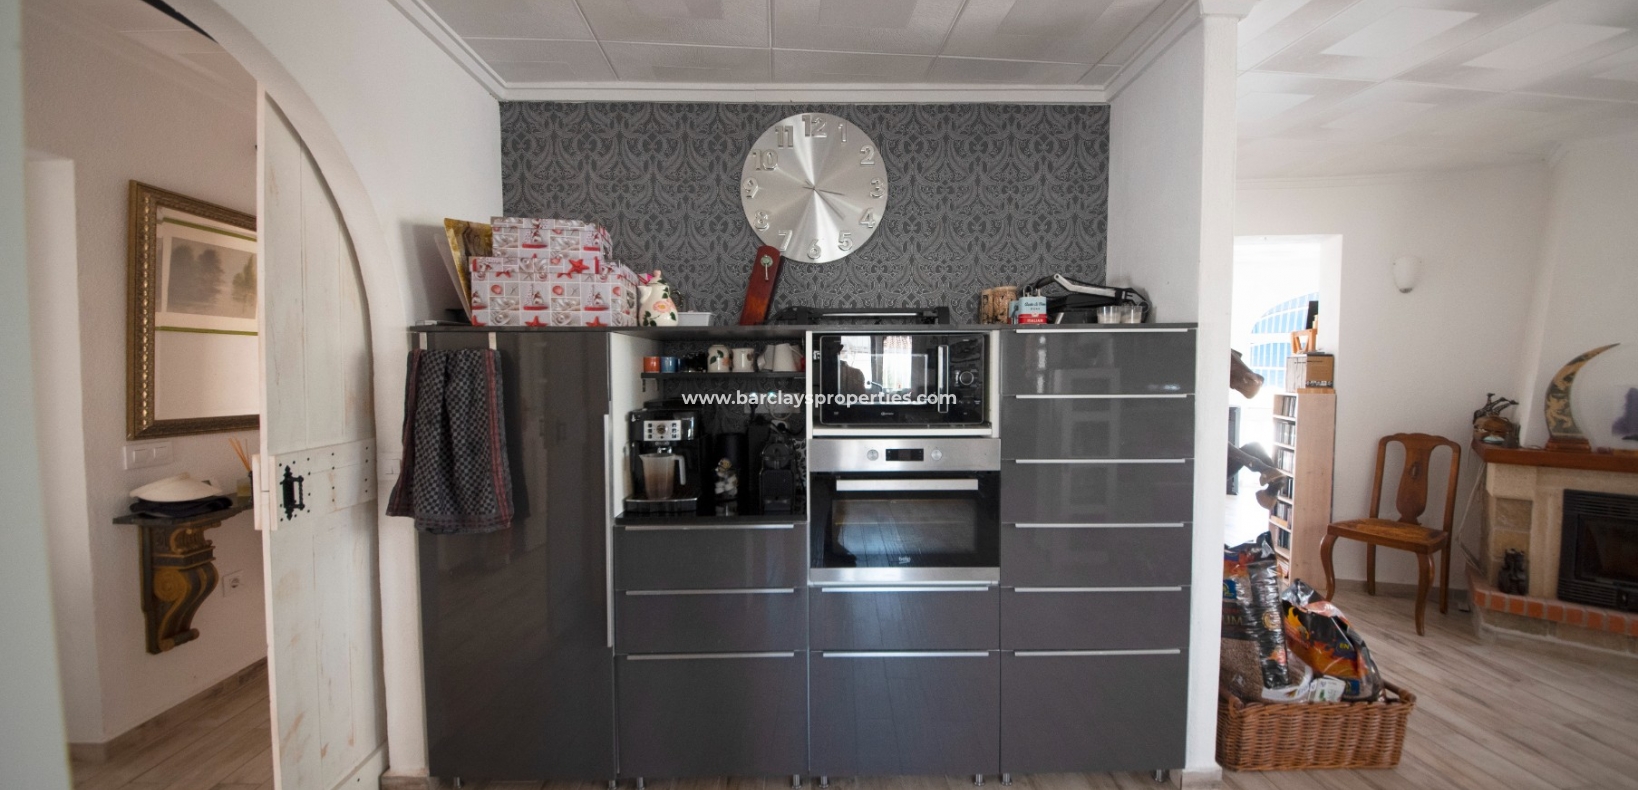 Keuken - Prestige Villa te koop in urbanisatie La Escuera, Alicante